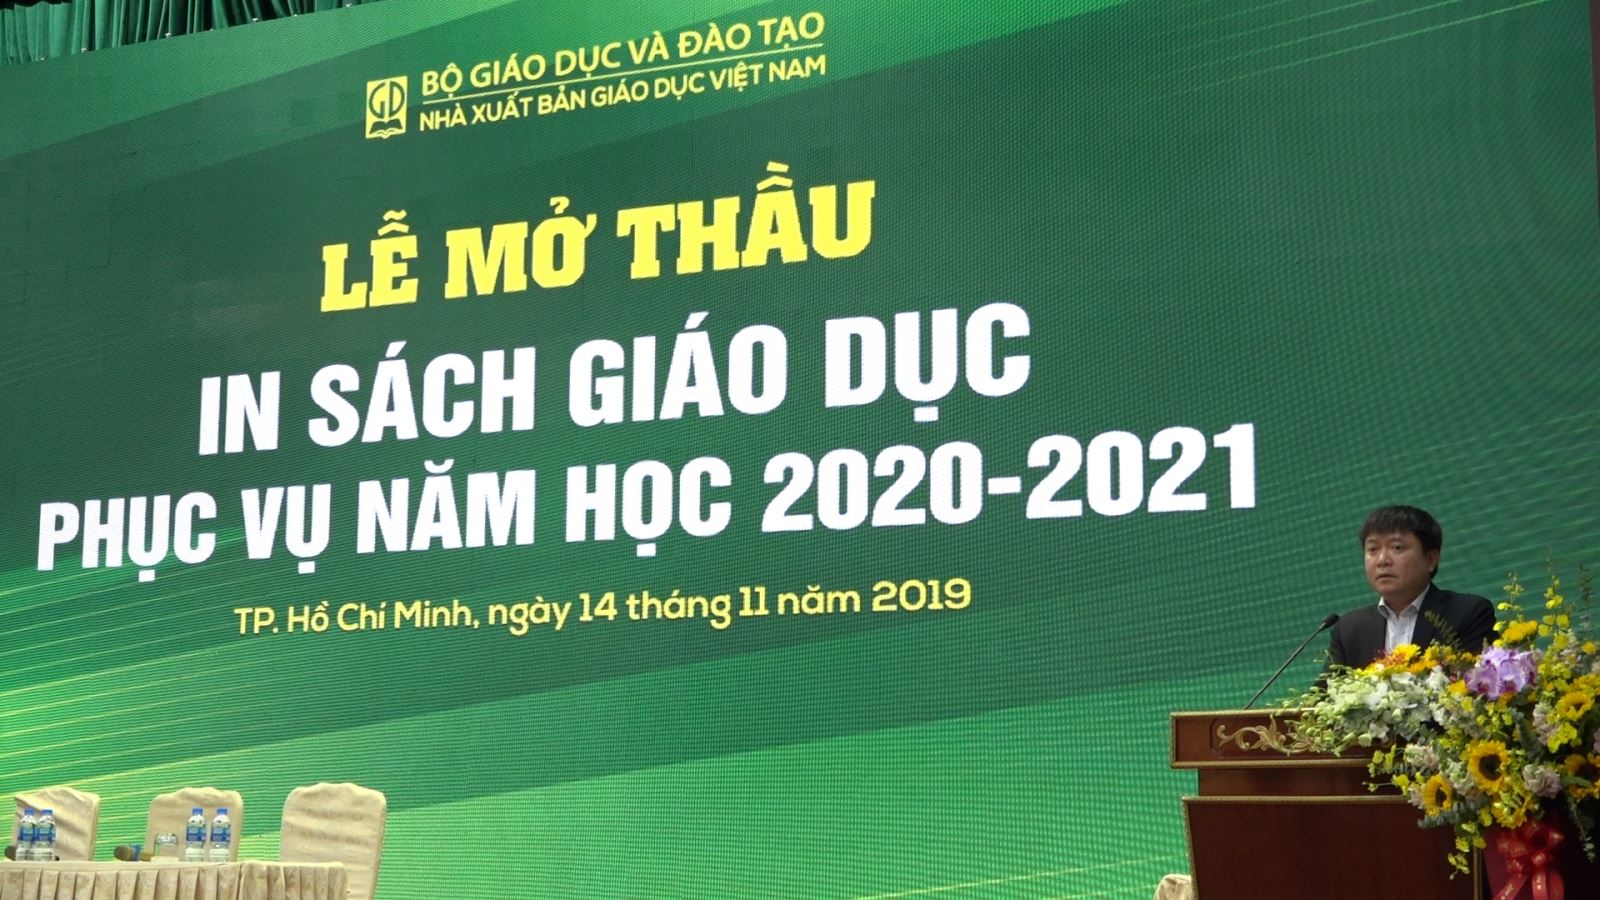 NXB Giáo dục Việt Nam mở thầu in sách giáo dục phục vụ năm học  2020-2021